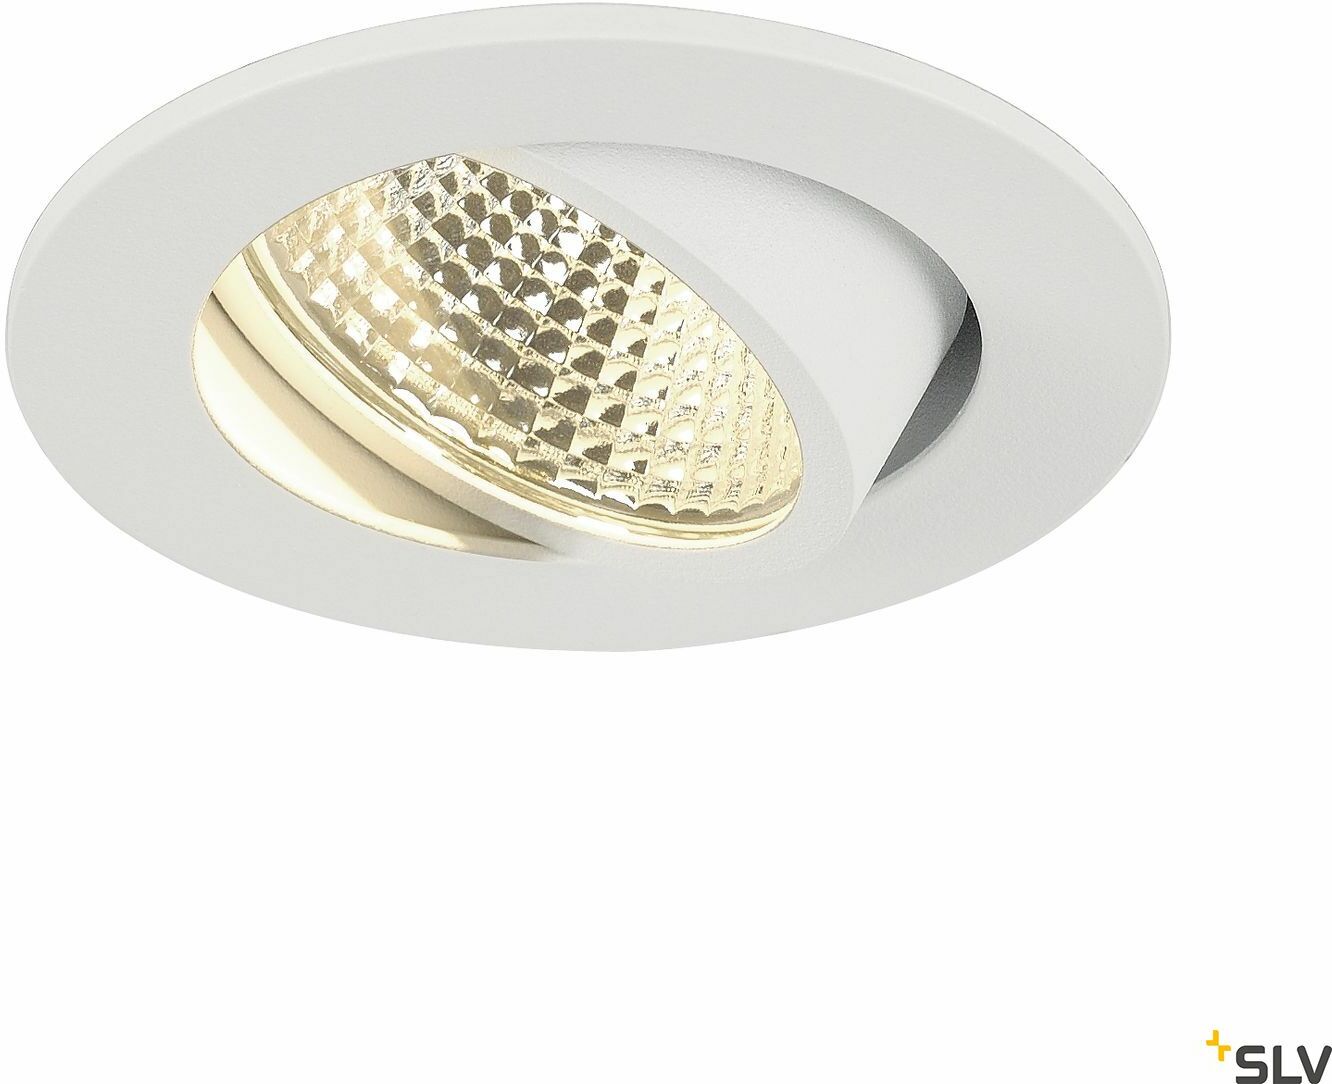 NEW TRIA 68 I CS lampa sufitowa wpuszczana LED,, kolor biały, okrągła, 3000K, 38 , z zasilaczem i sprężynami zaciskowymi